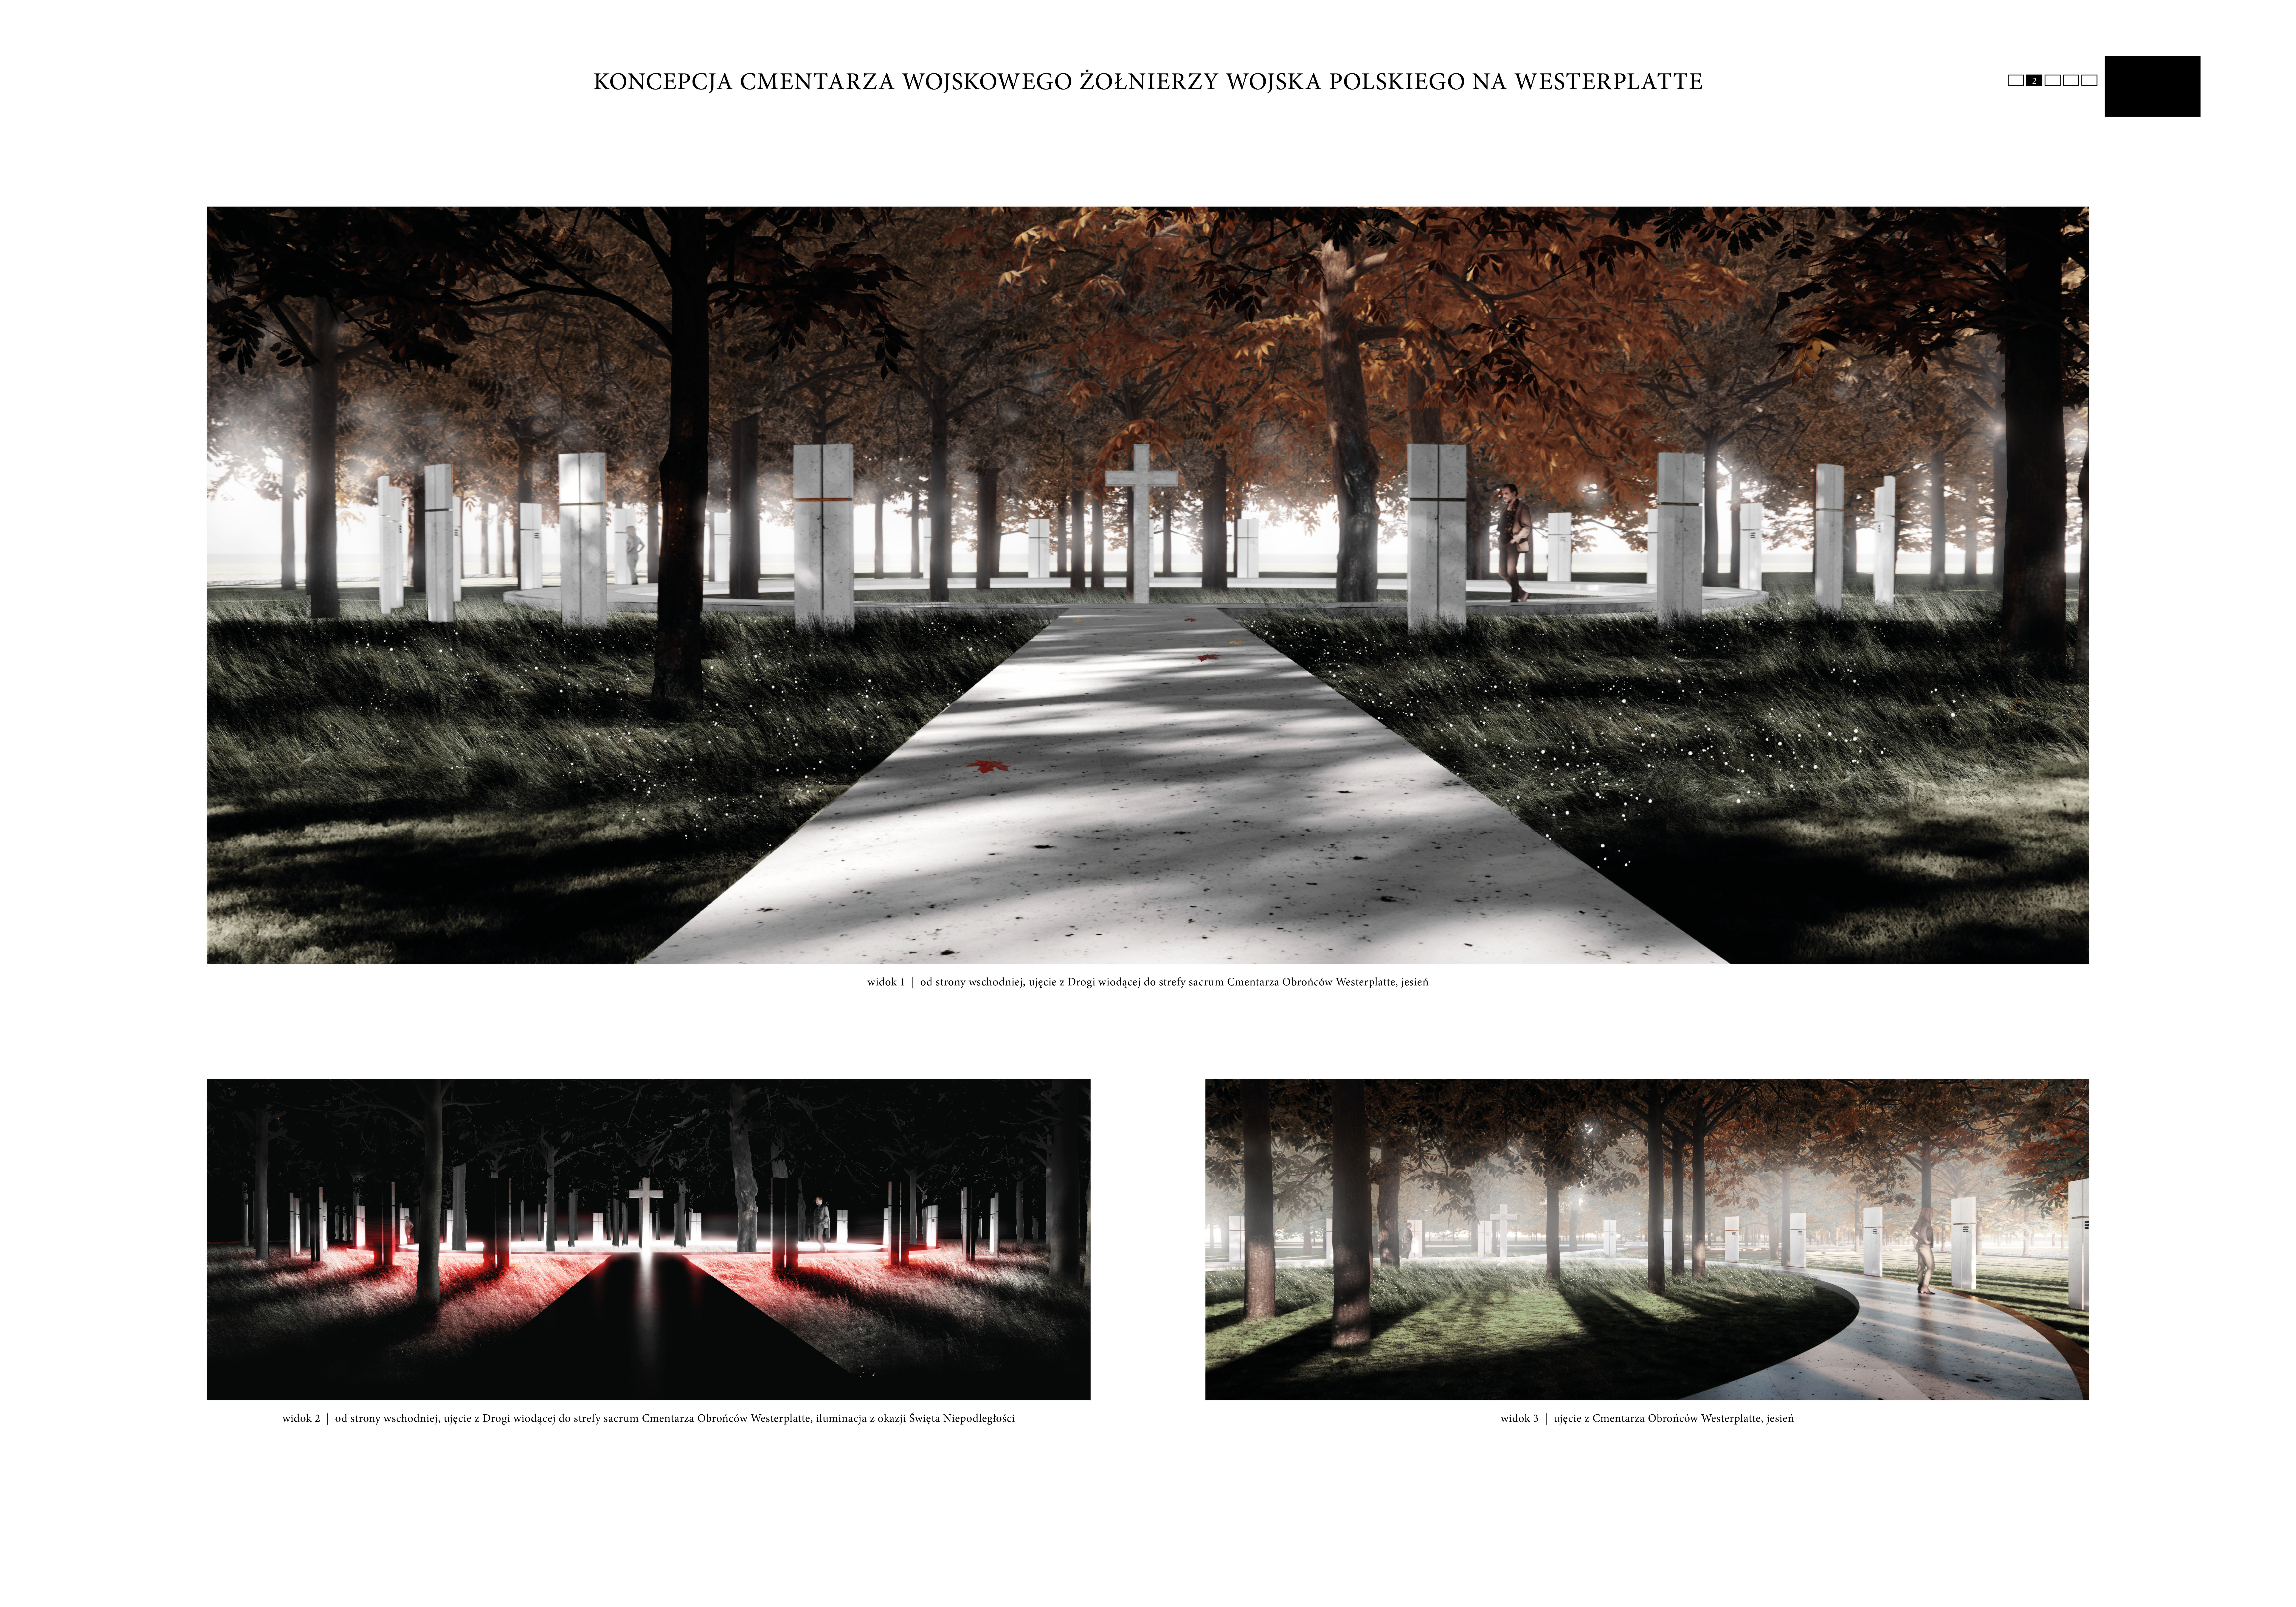 Wybrano koncepcję urbanistyczno-architektoniczną cmentarza wojskowego na Westerplatte